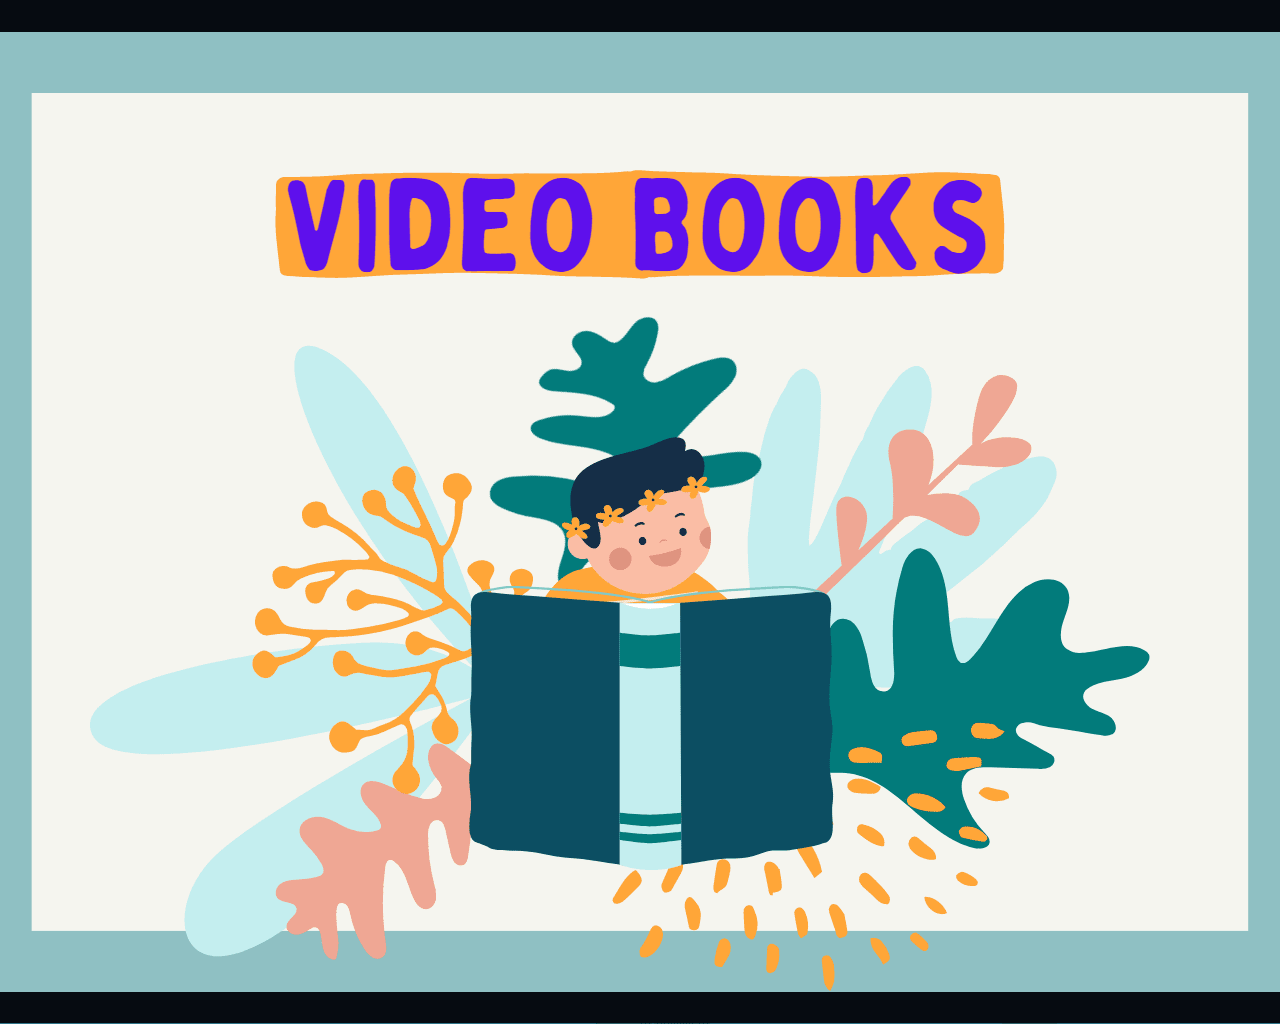 I will create a video book or videobooks